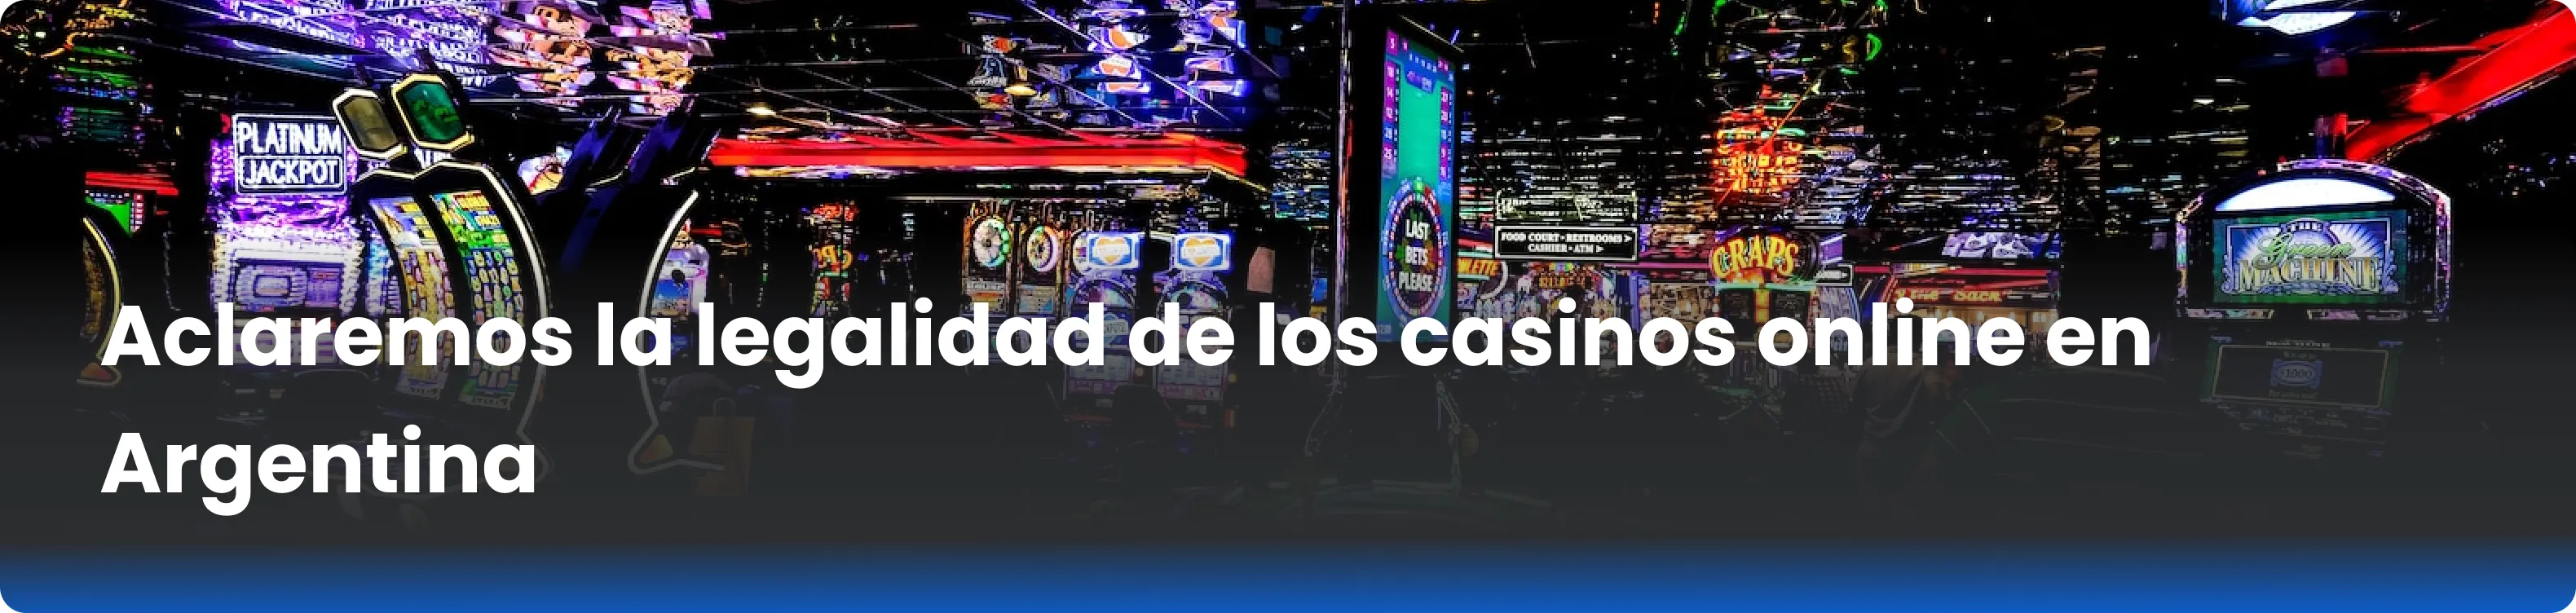 Aclaremos la legalidad de los casinos online en Argentina 